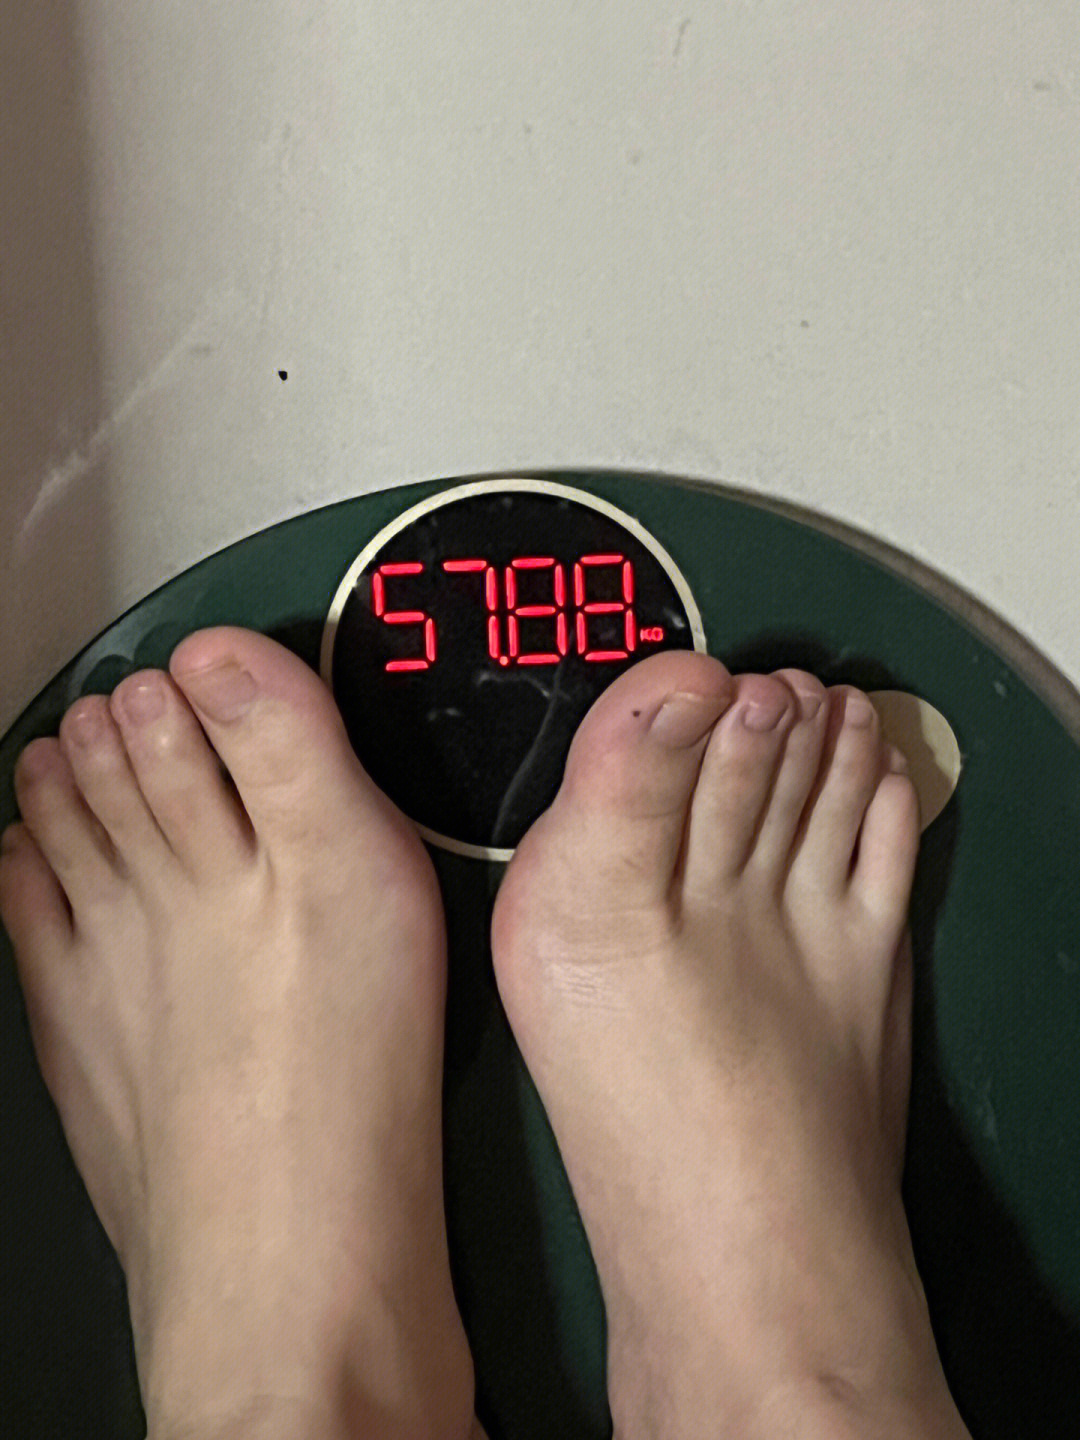 减肥减到崩溃第10天了瘦了4斤